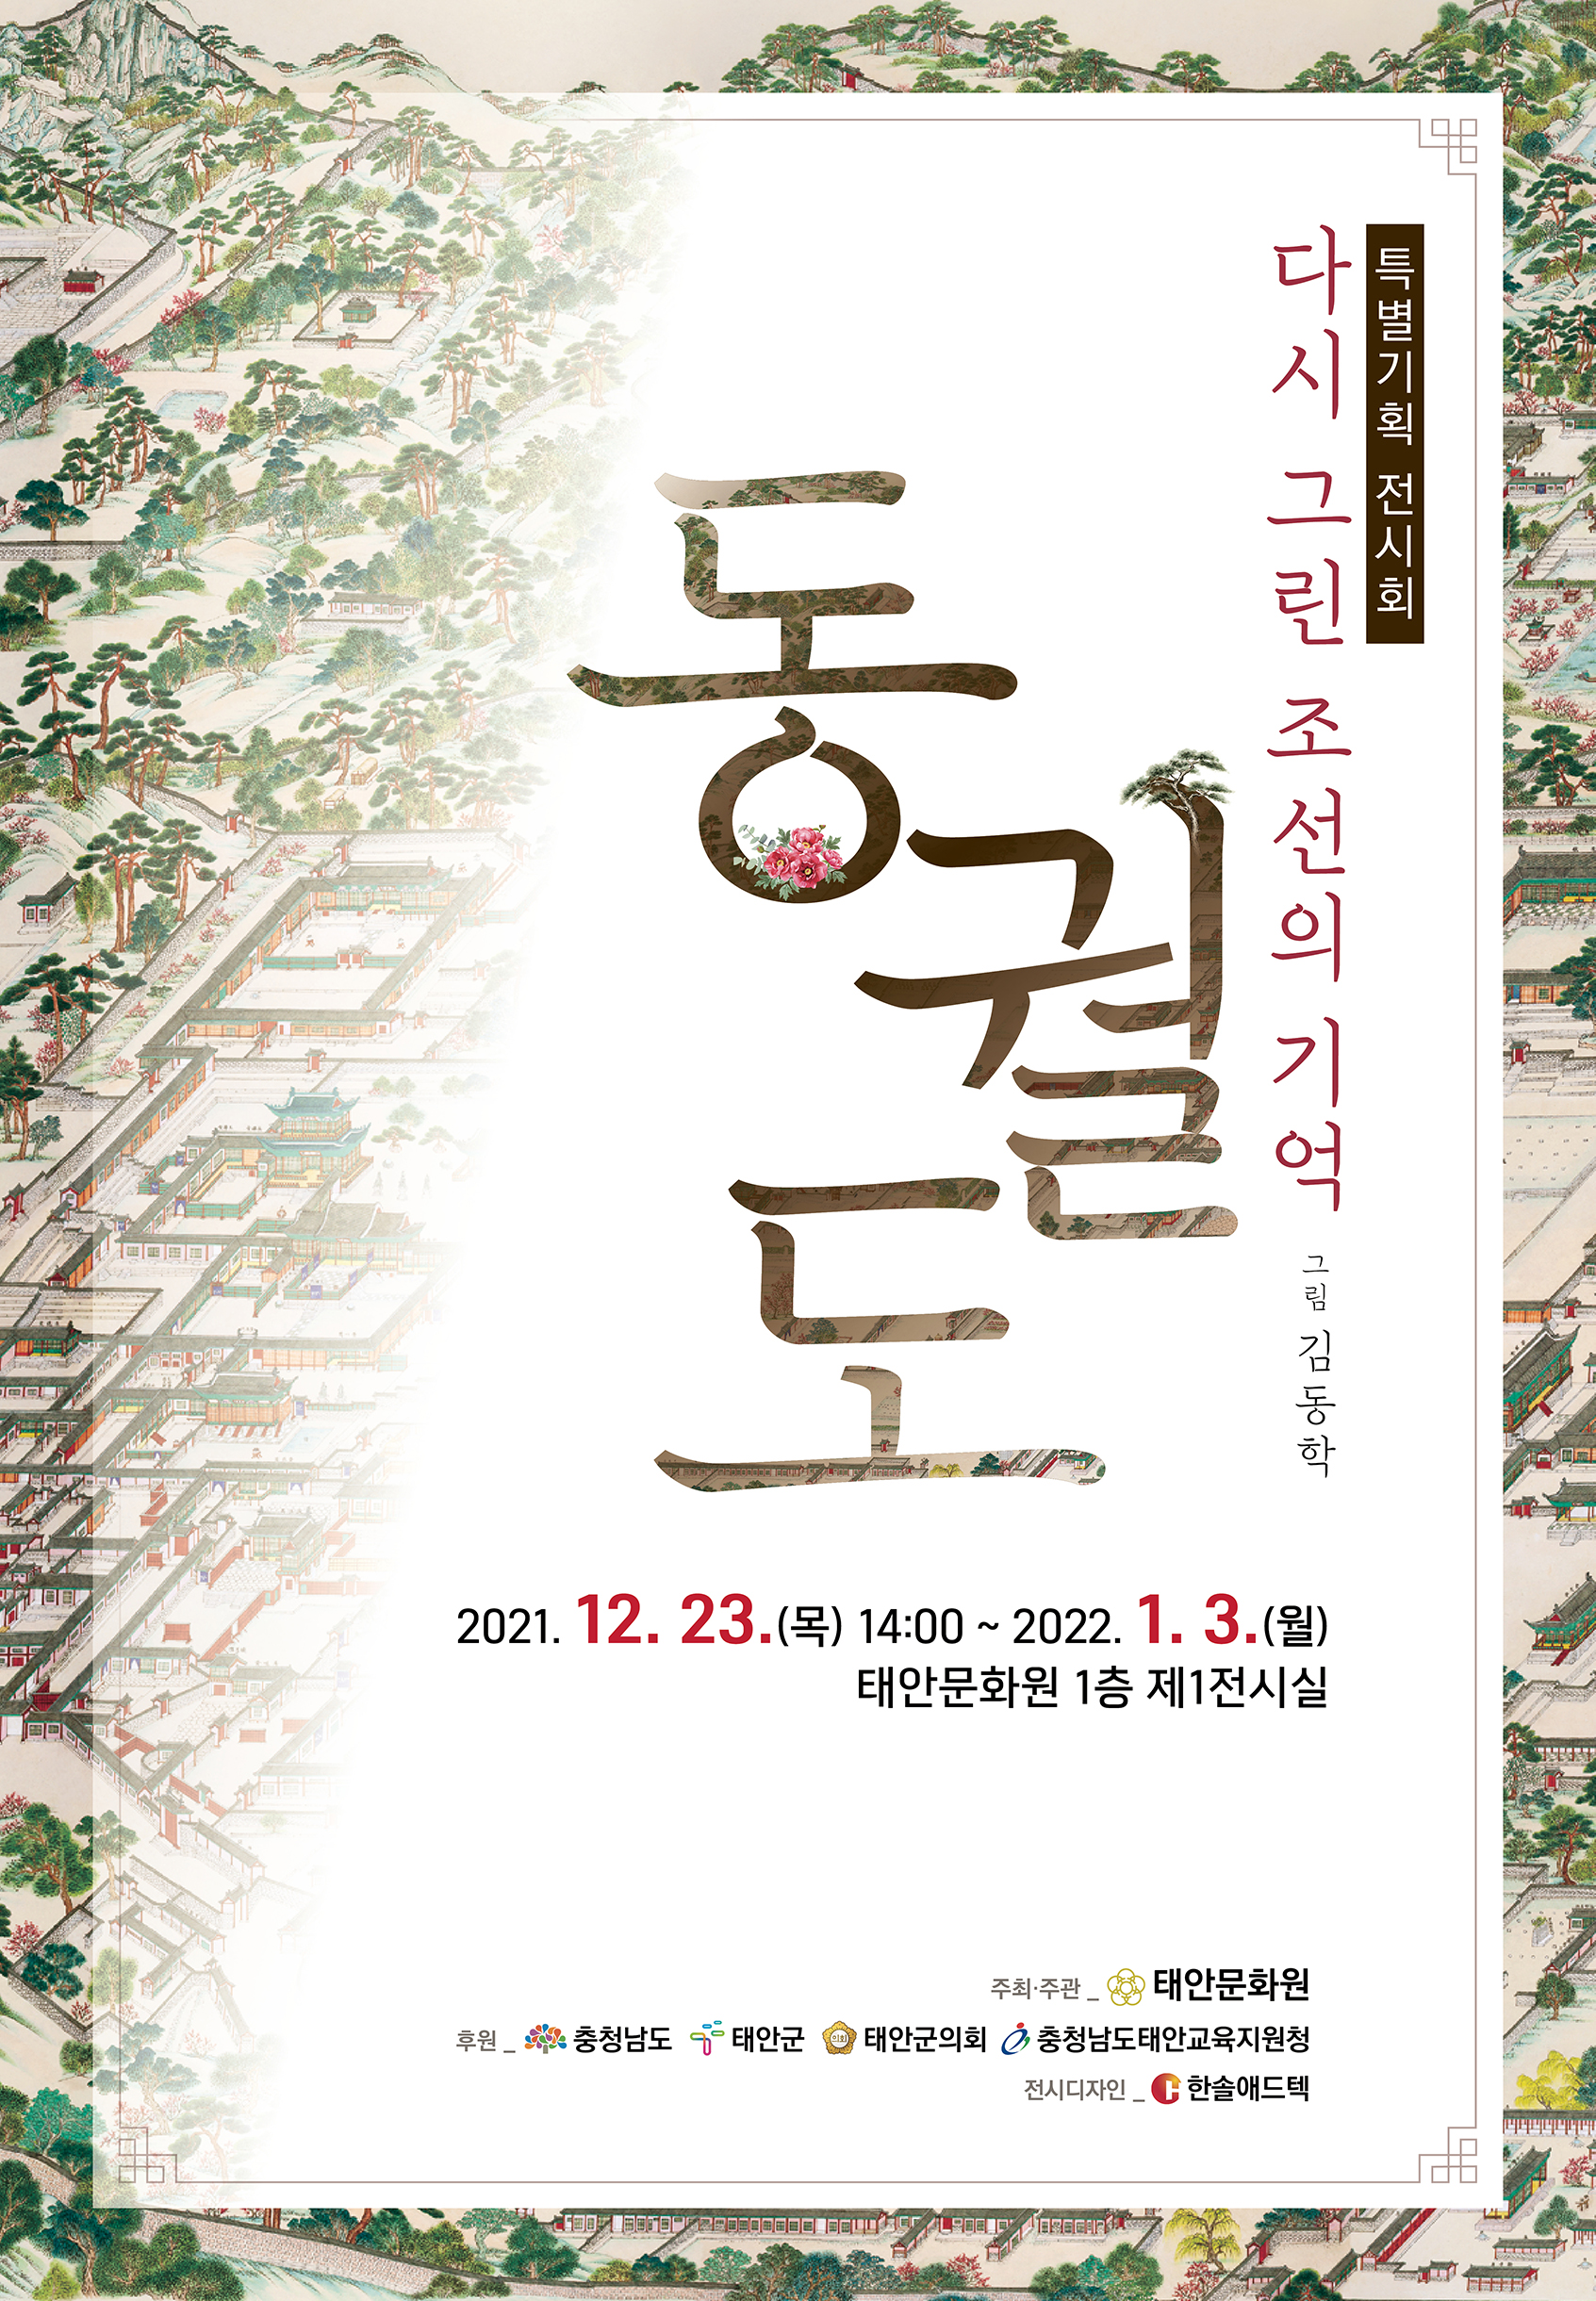 특별기획전 '다시 그린 조선의 기억' 『동궐도』 1차 연장전시 및 휴장안내